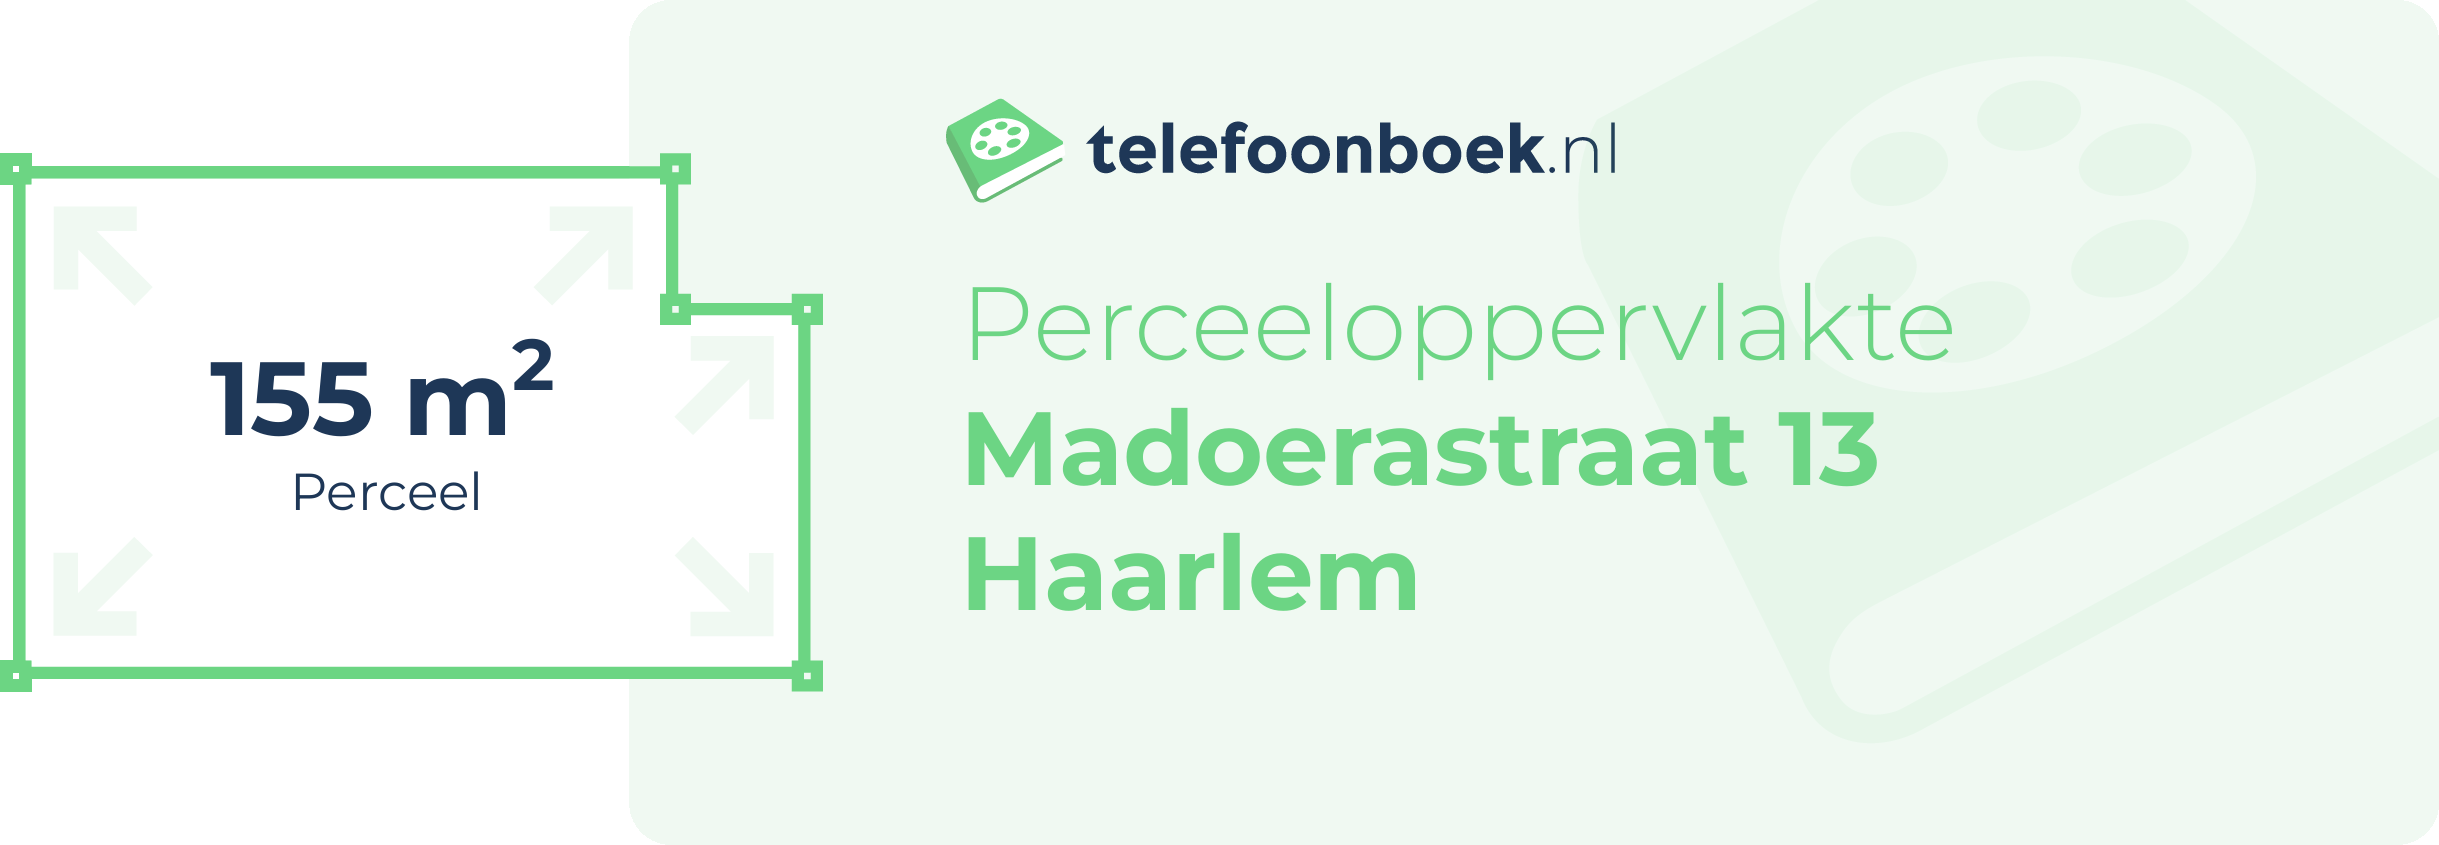 Perceeloppervlakte Madoerastraat 13 Haarlem